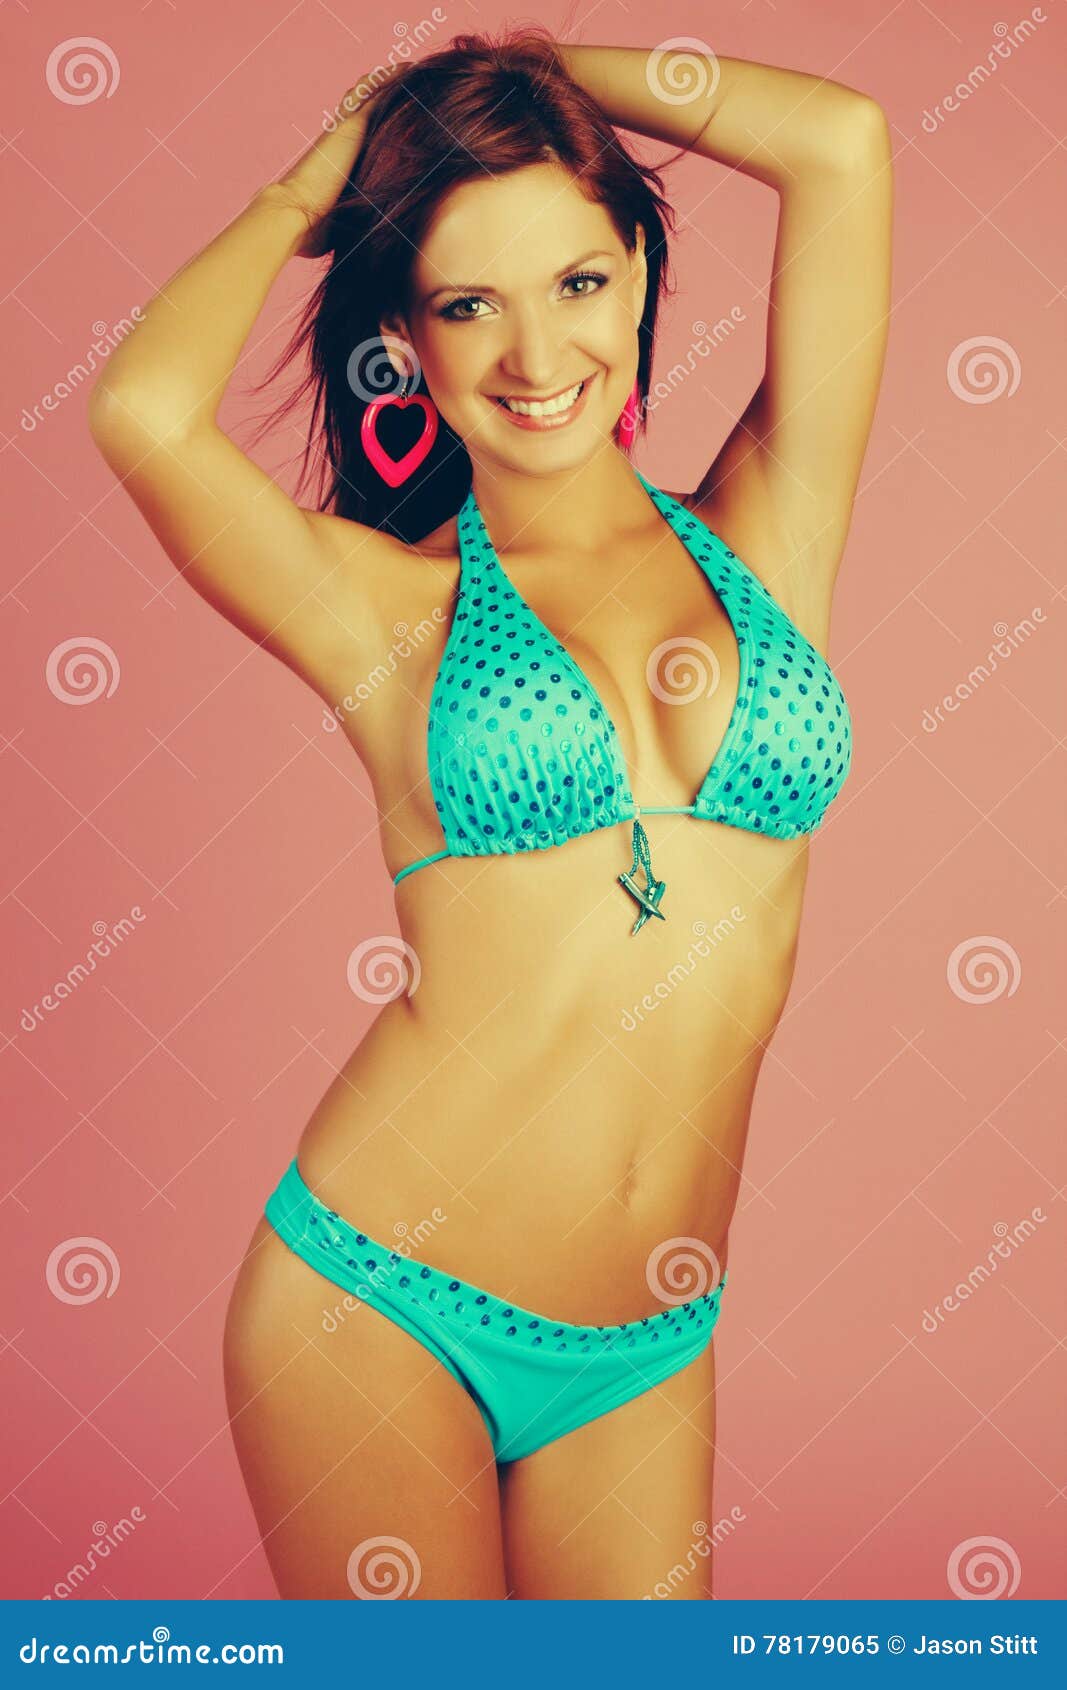 Latin Bikini Girl stock image pic